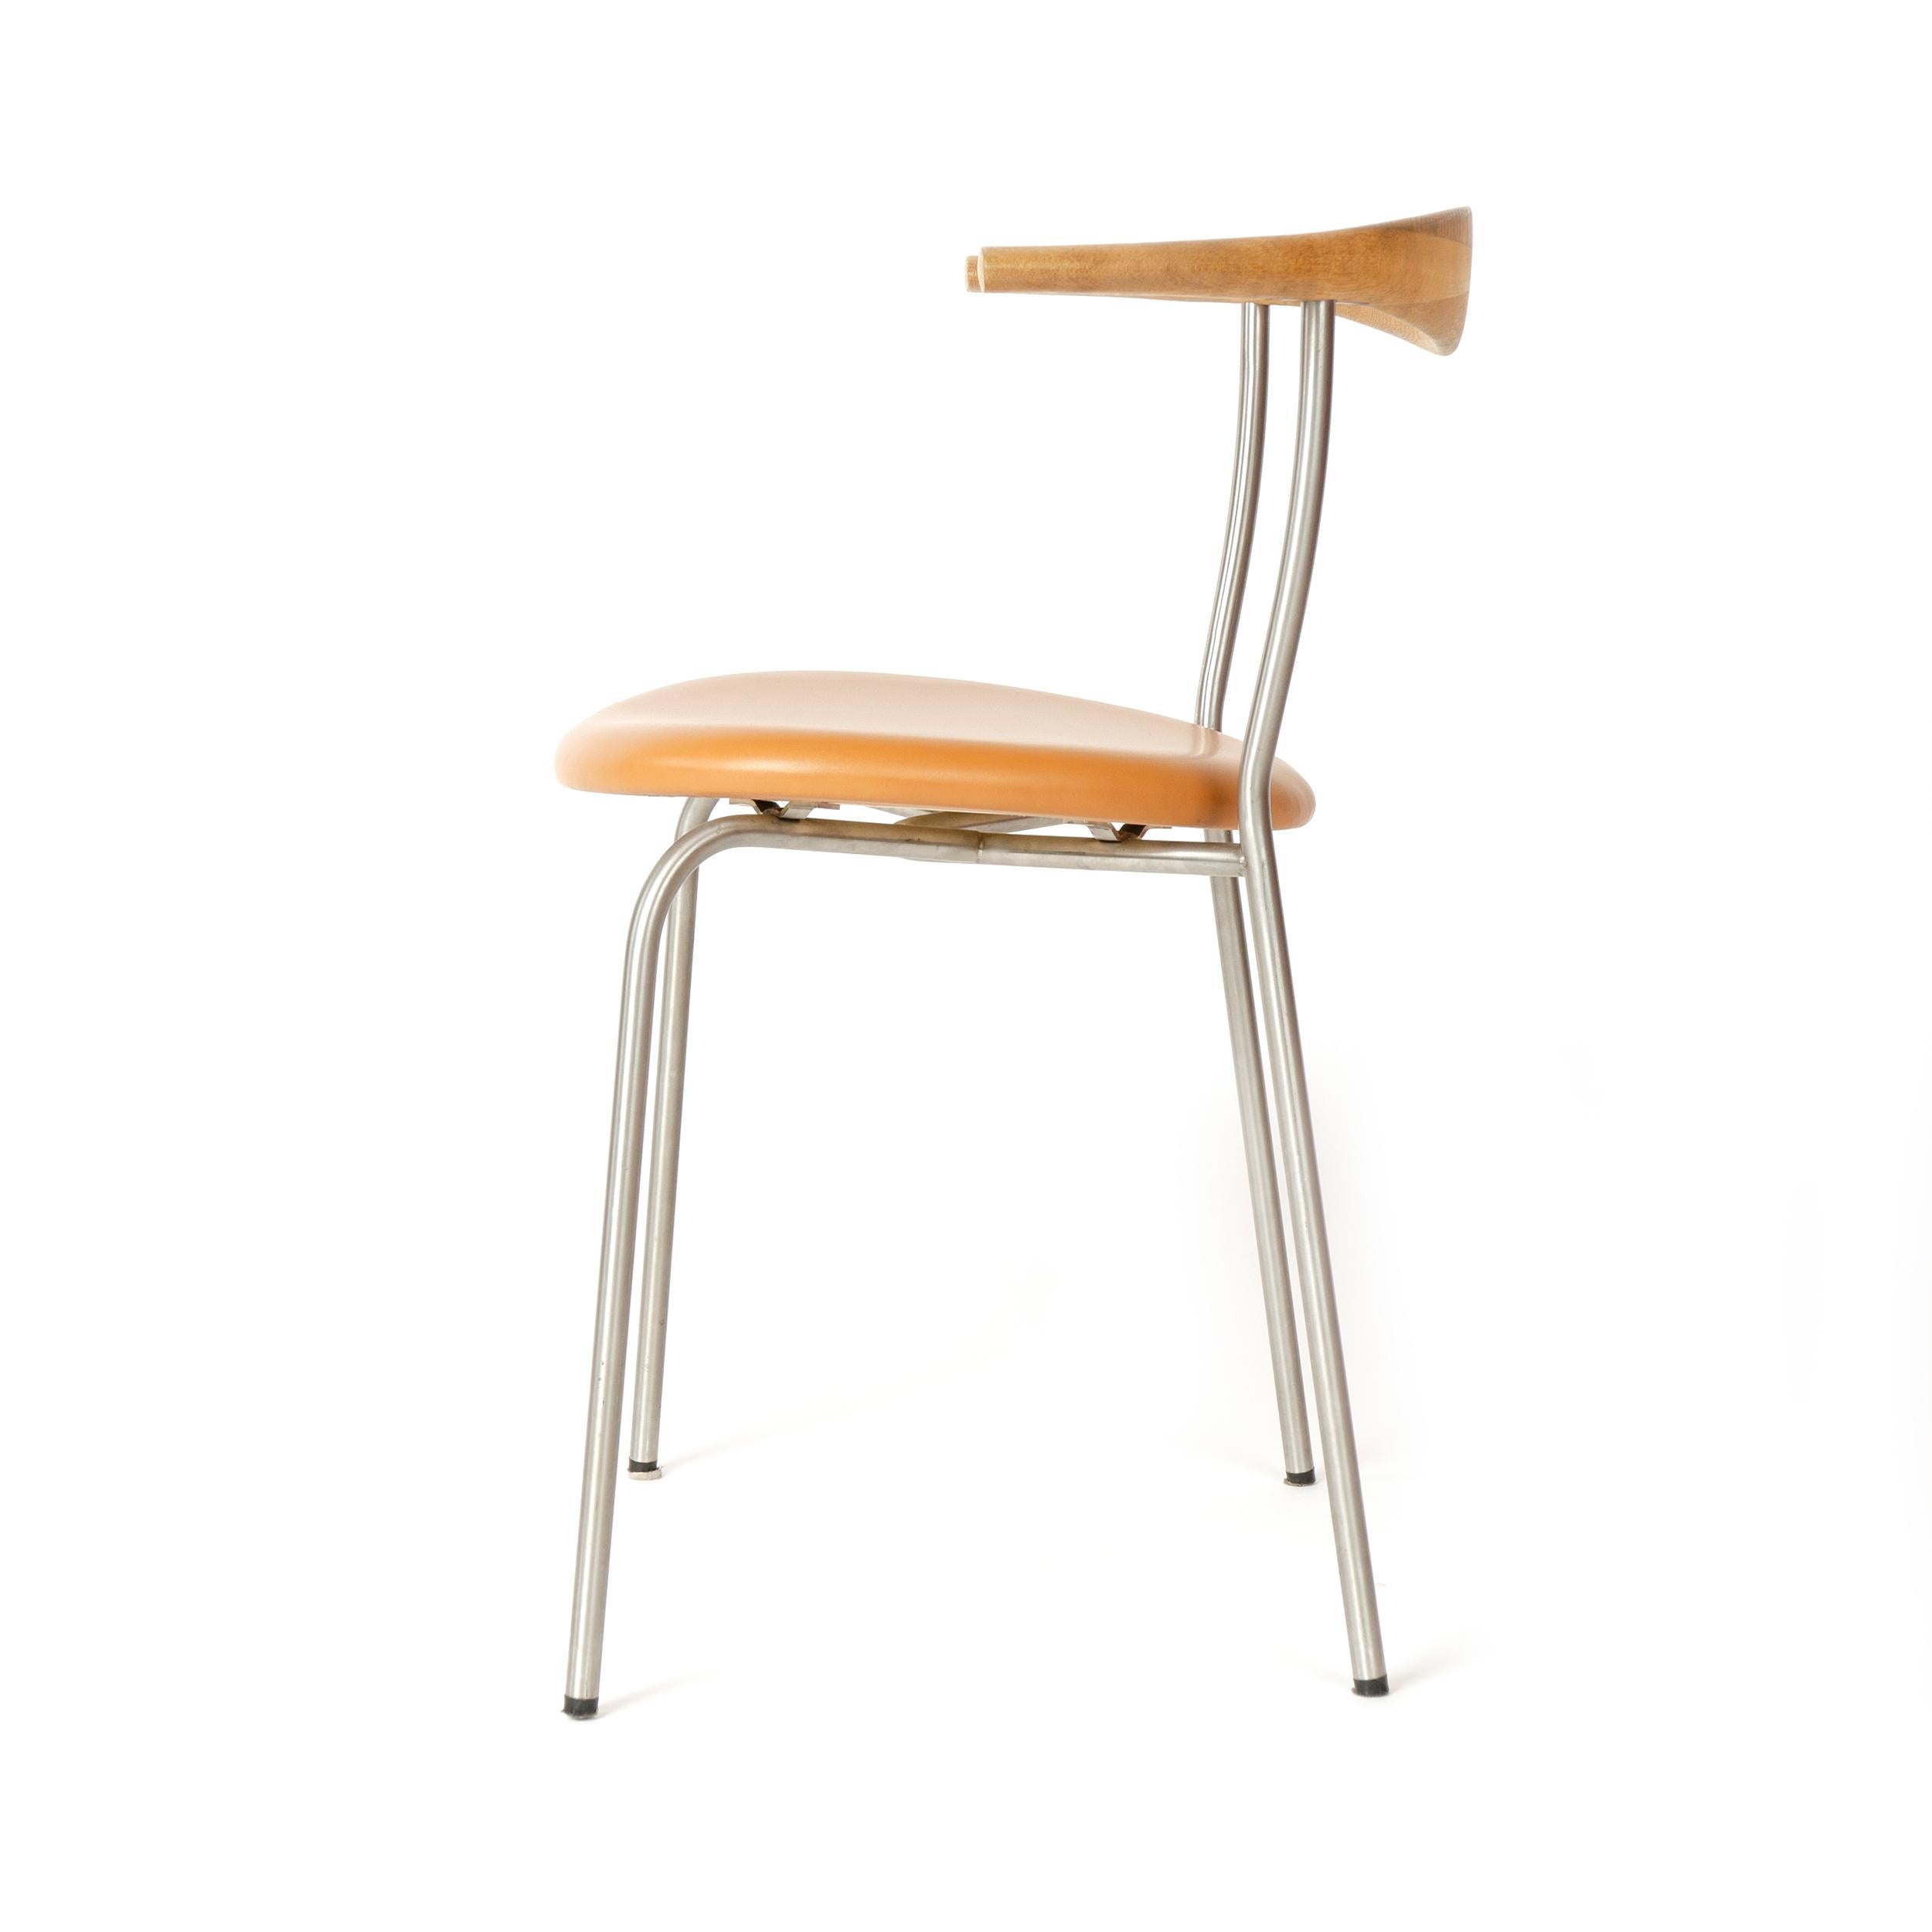 Contemporary Scandinavian Modern Model 701 Minimal Chair by Hans J. Wegner for PP Mobler